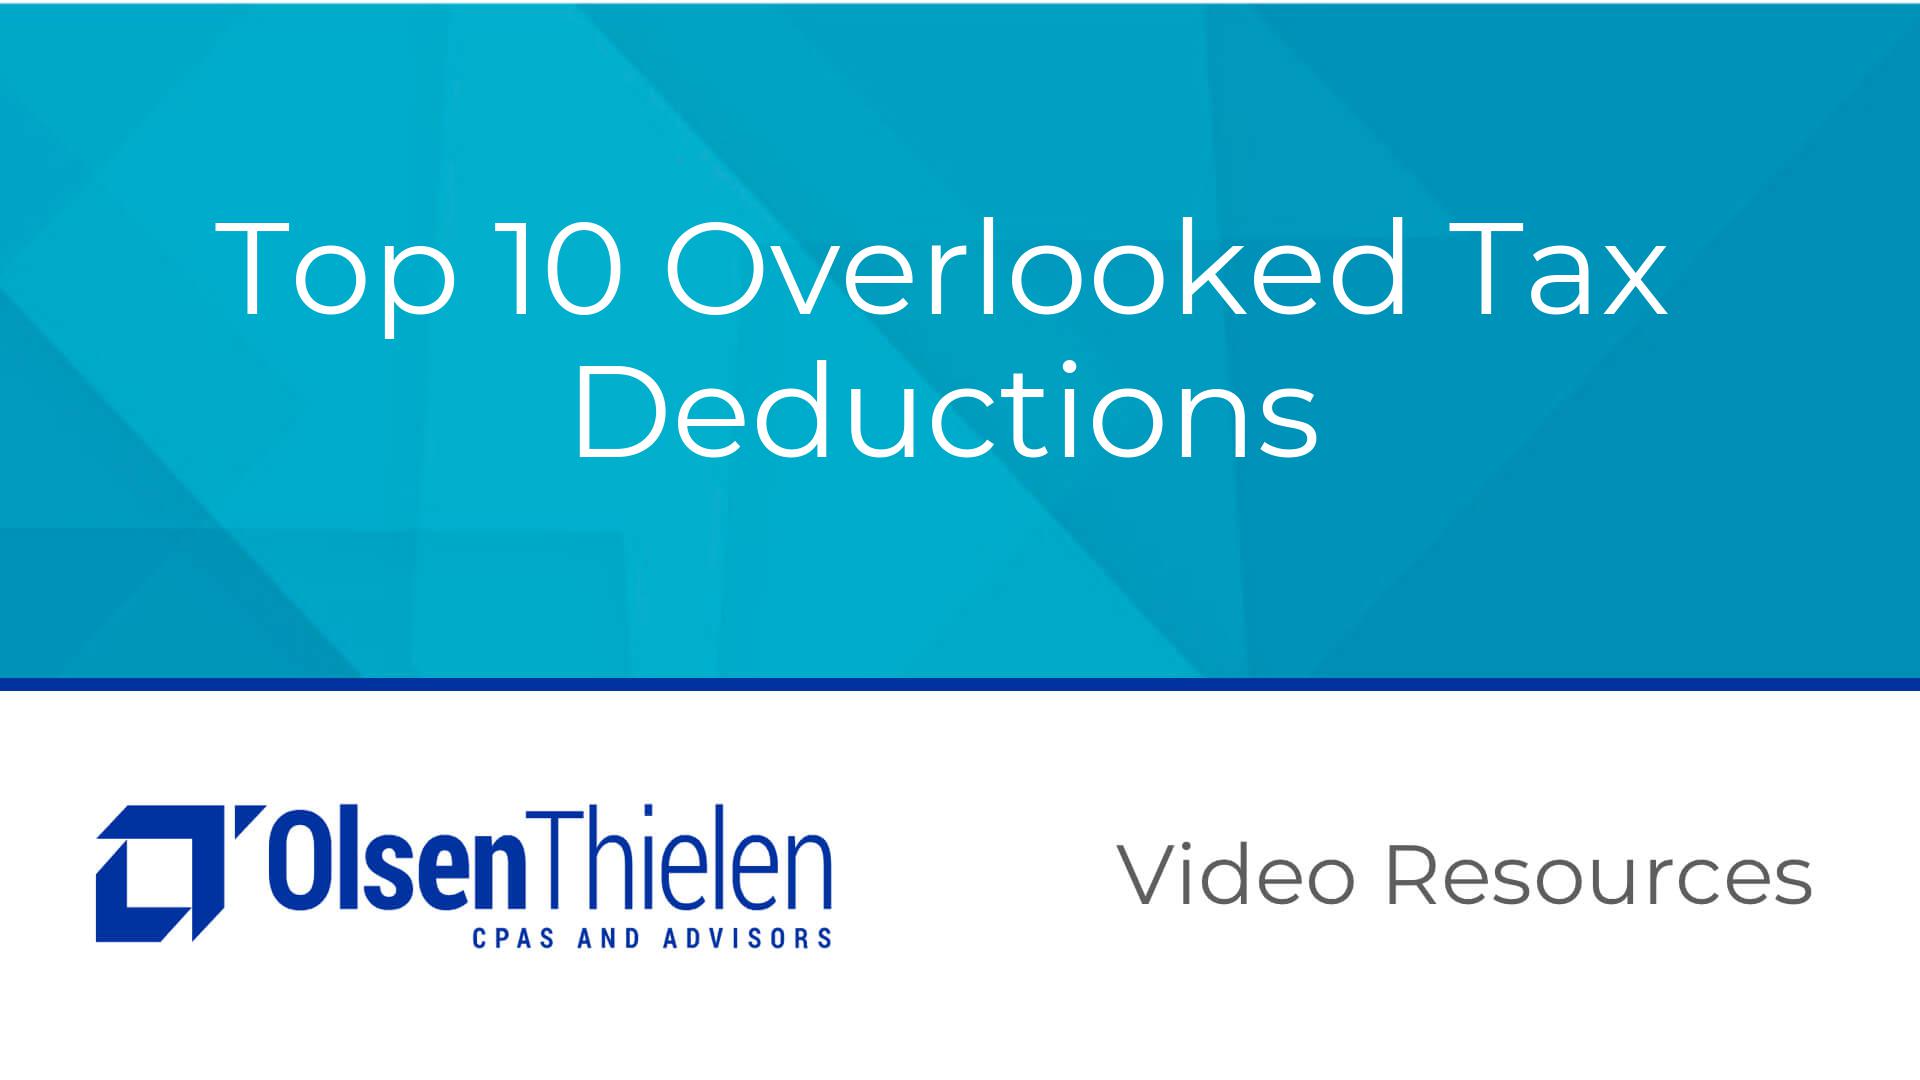 Top 10 Overlooked Tax Deductions